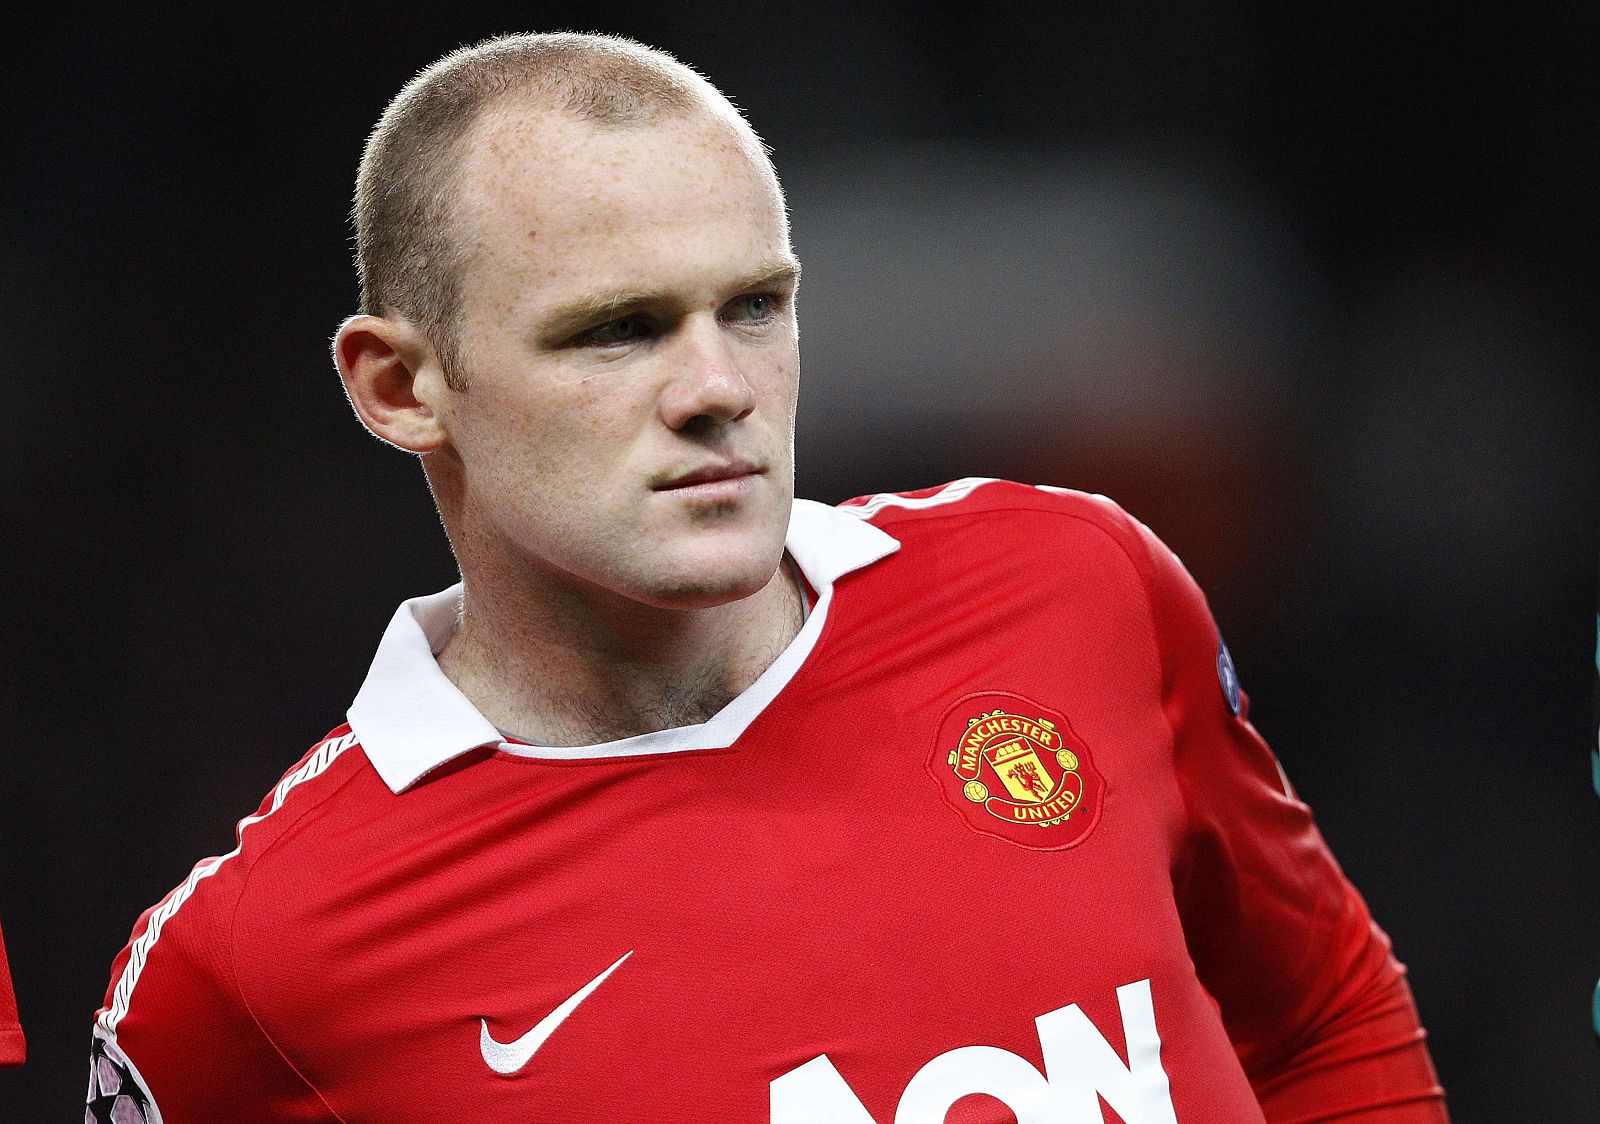 Wayne Rooney no deja atrás su imagen de jugador controvertido